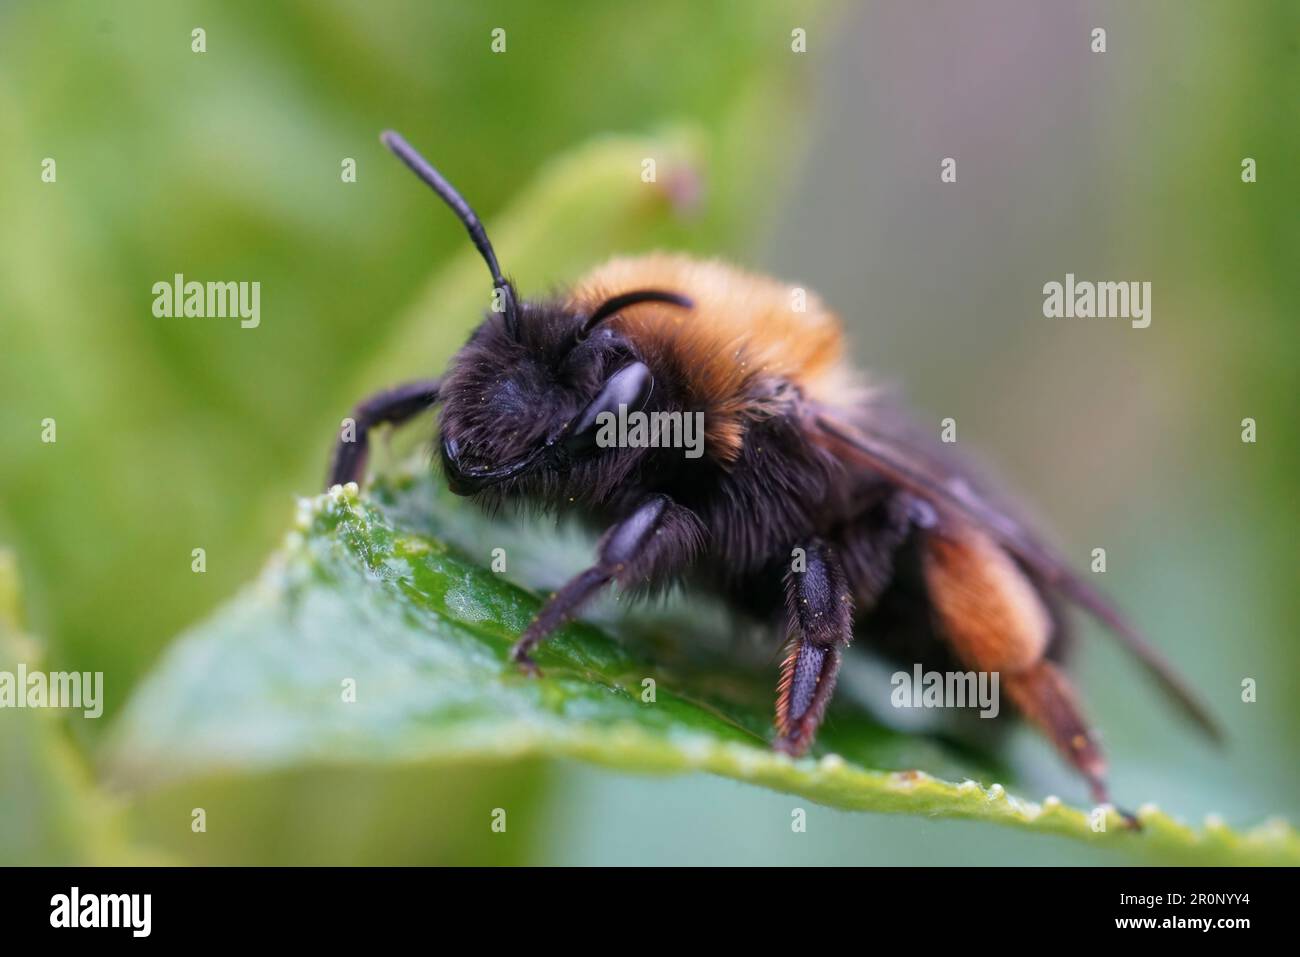 Detaillierte Nahaufnahme einer weiblichen Clarkes Bergbaubiene, Andrena Clarkella, die auf einem grünen Blatt sitzt Stockfoto